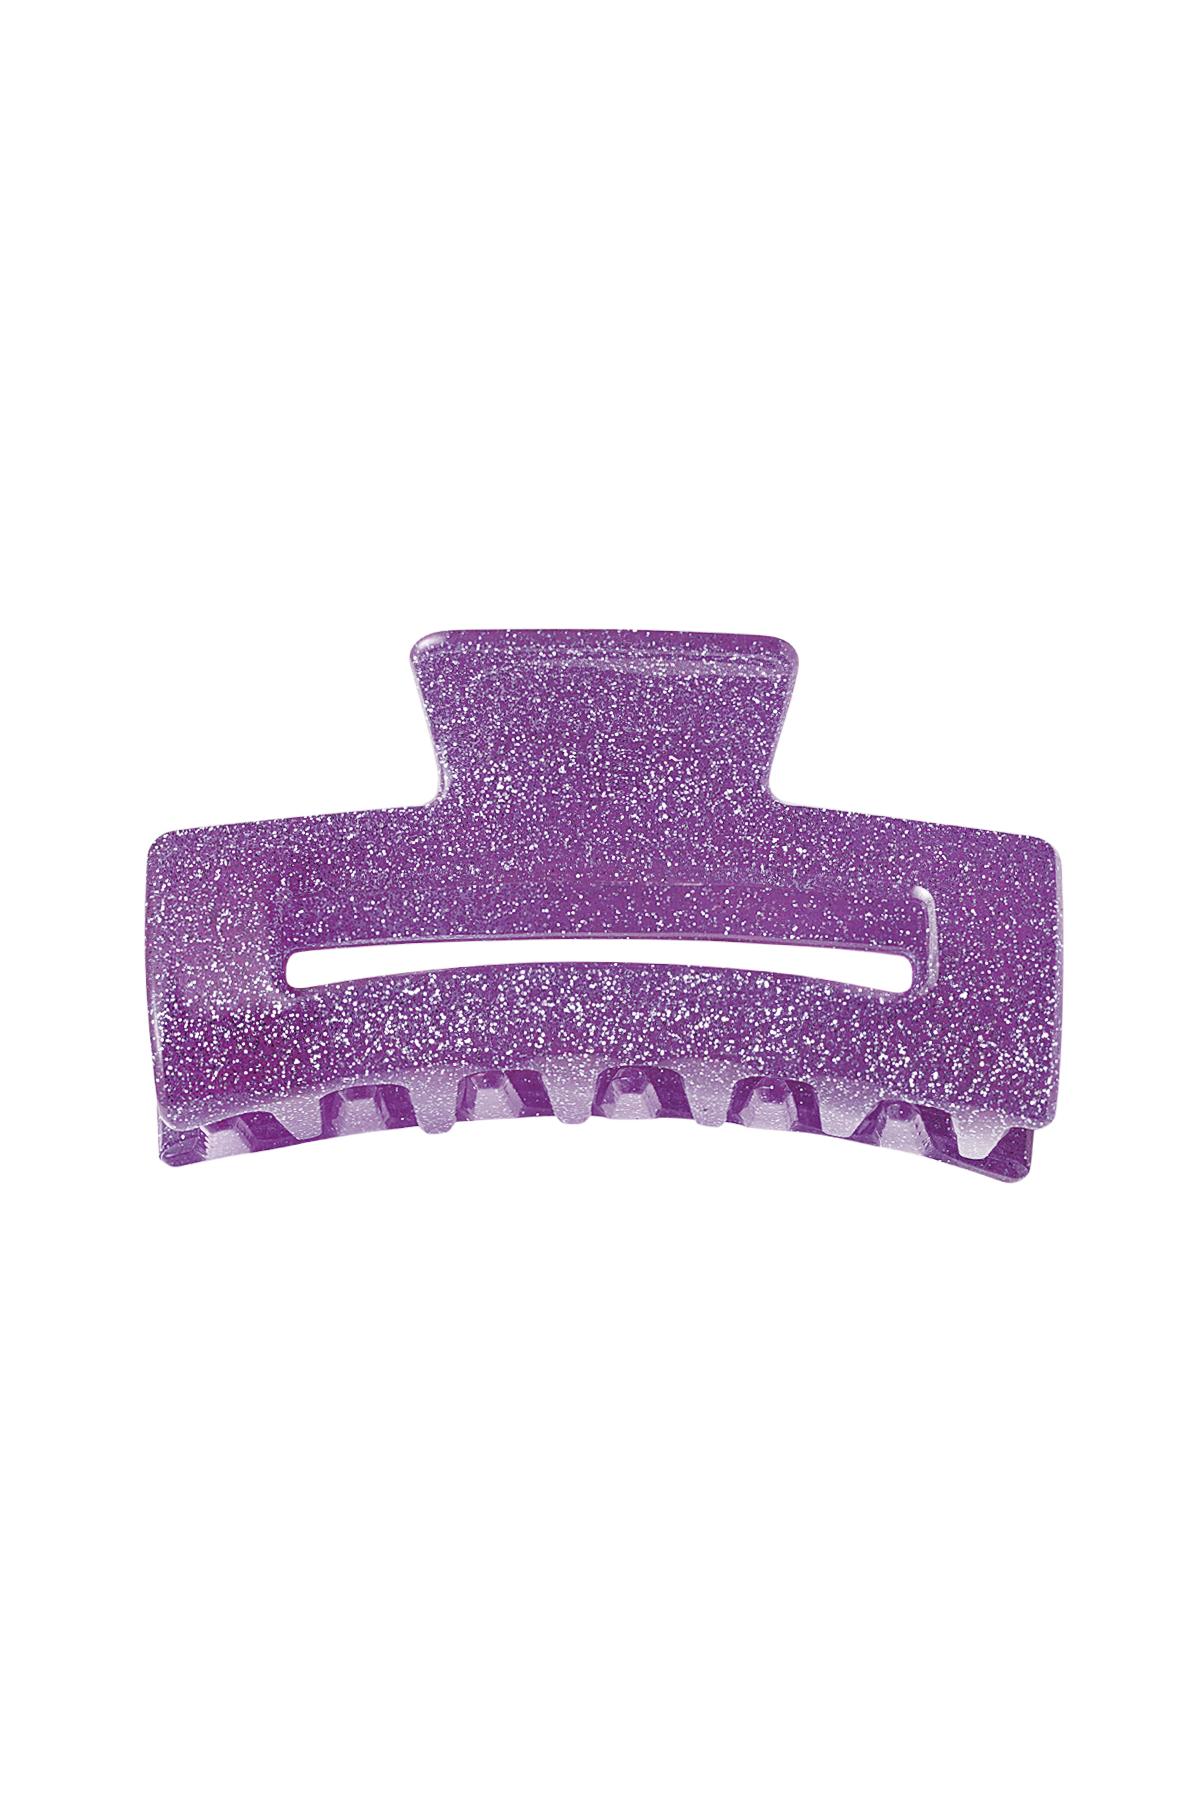 Fermaglio per capelli glitterato Purple Sheet Material 